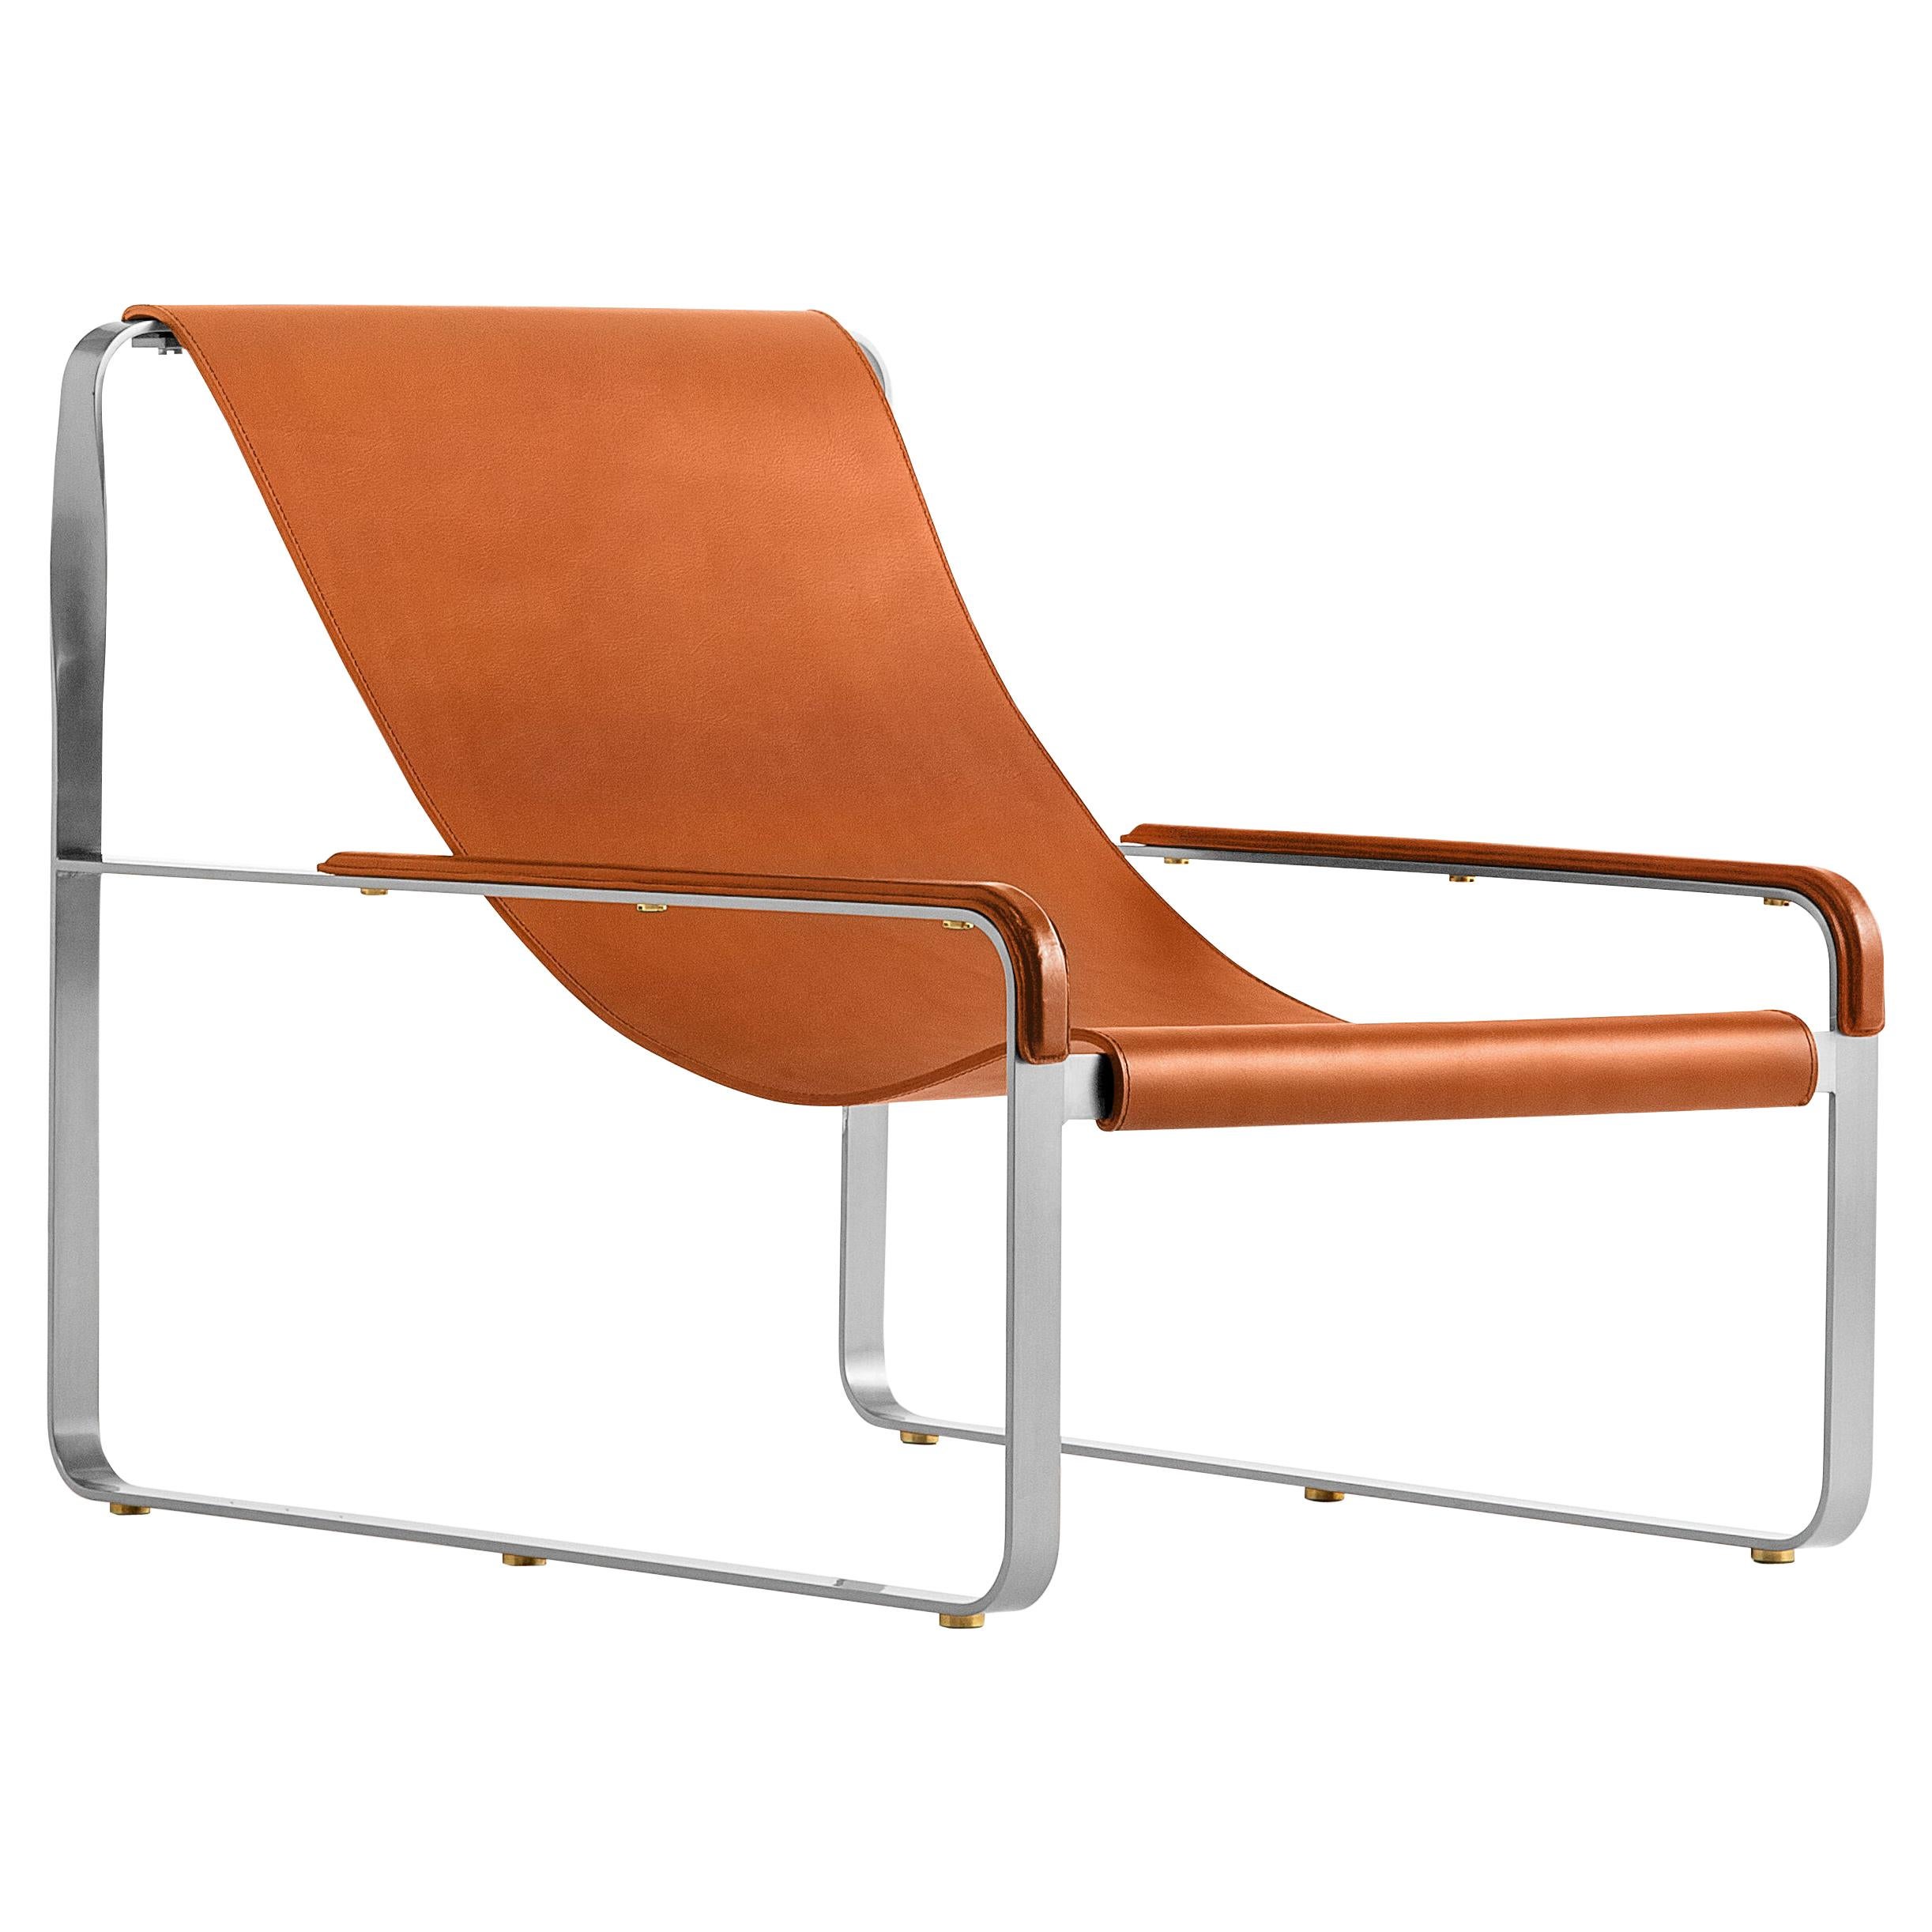 Handgefertigte Contemporary Chaise Lounge aus altsilbernem Metall und naturfarbenem Leder